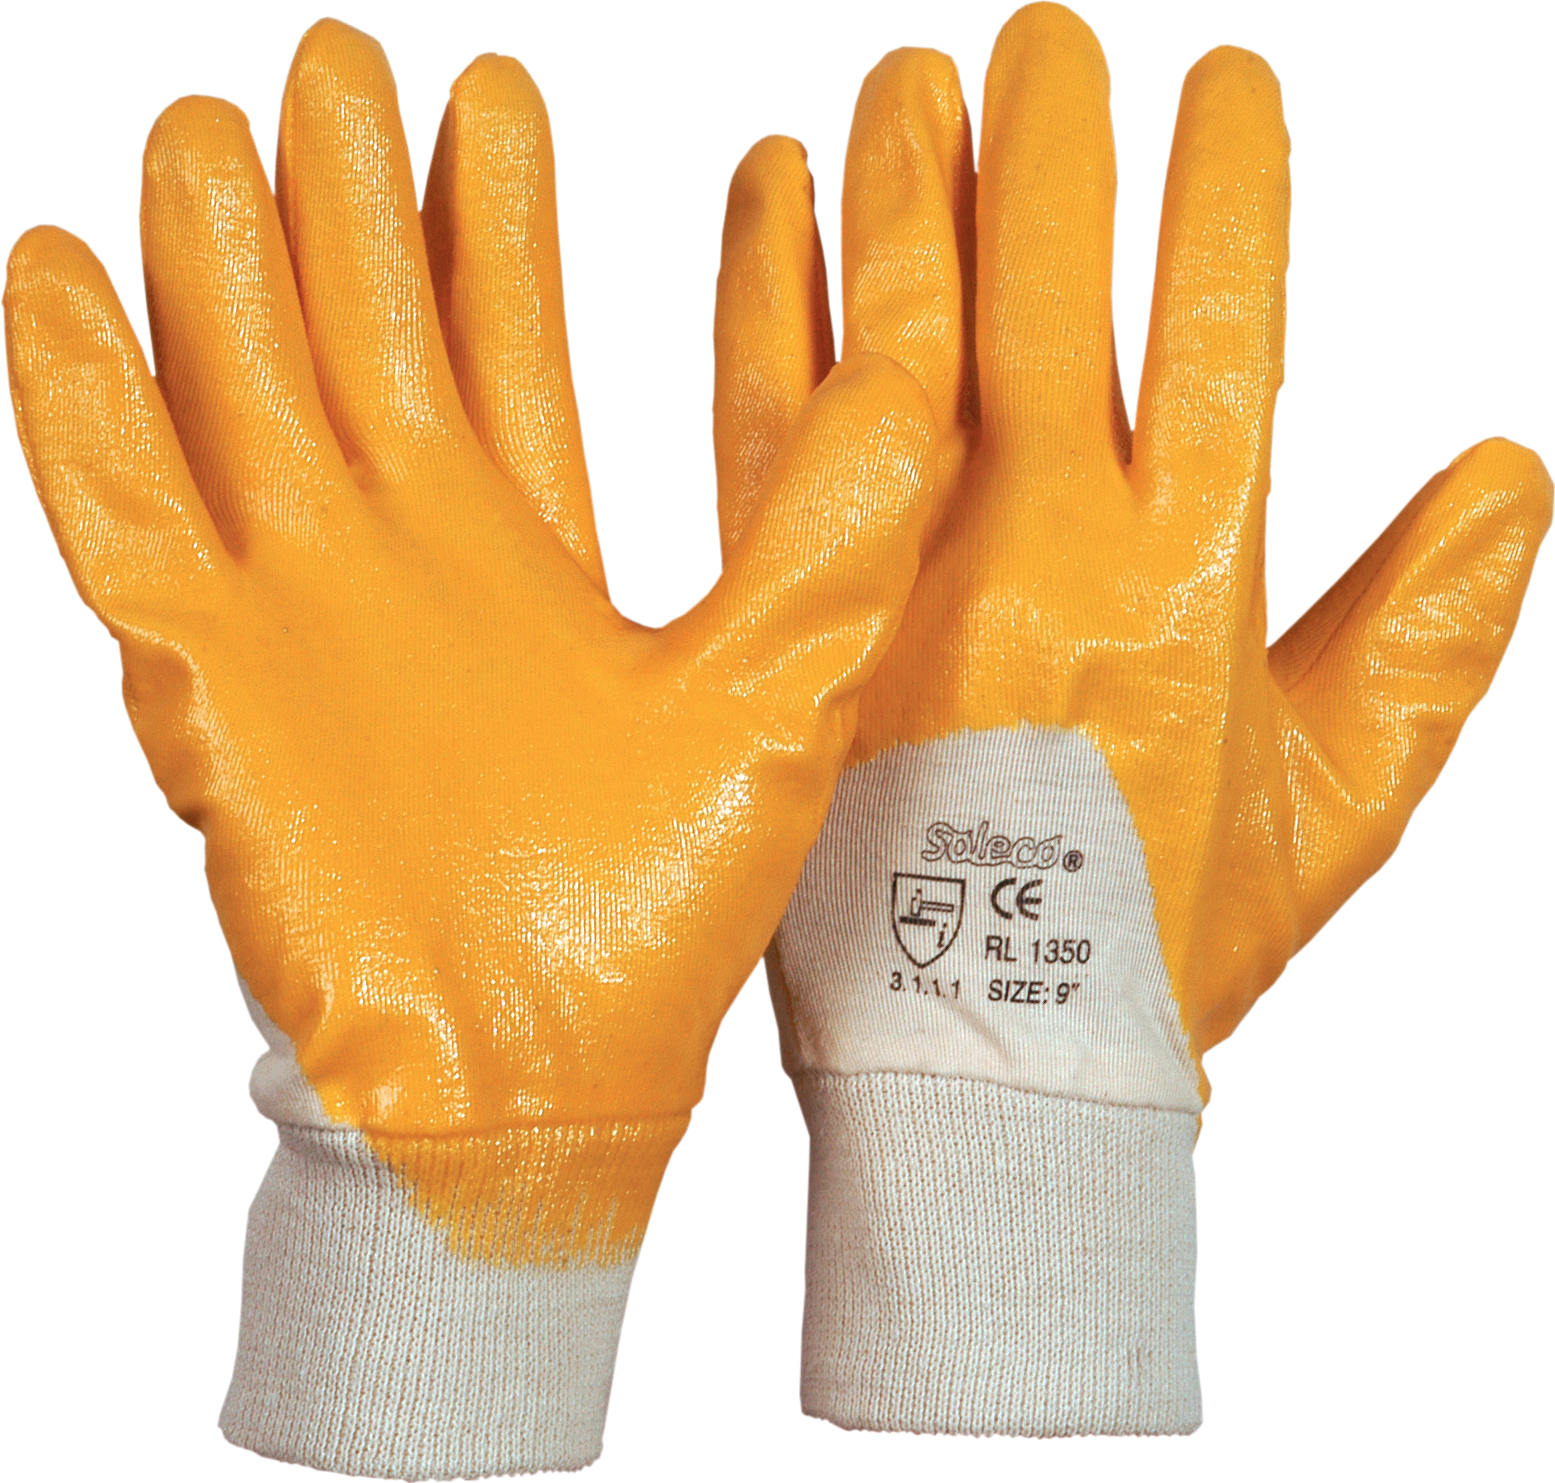 Handschuh Nitril "Der Einfache" gelb Gr.8